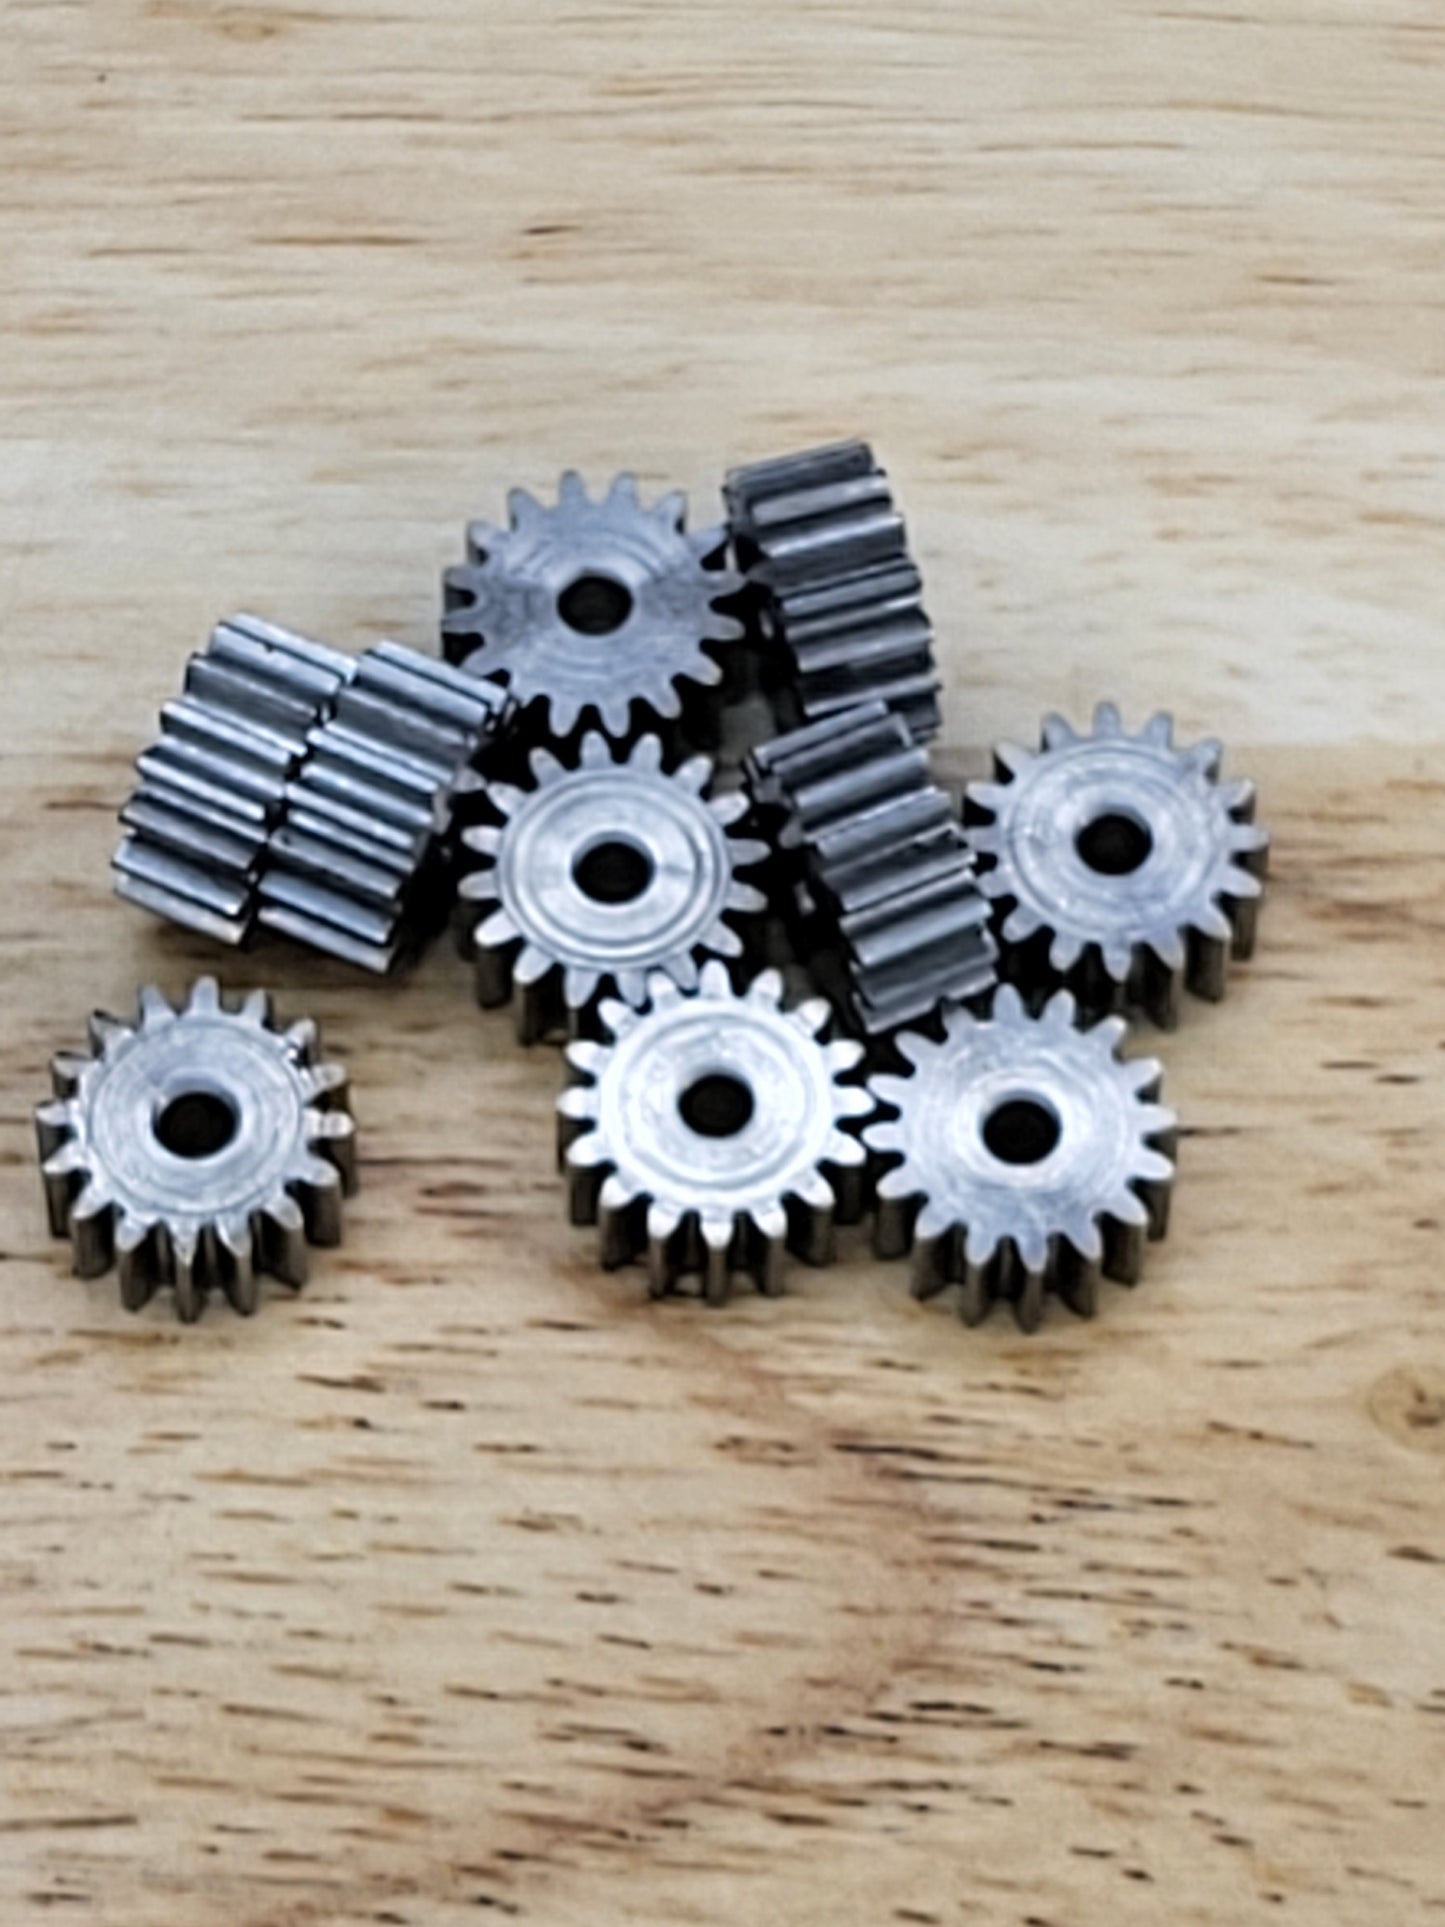 2mm Shaft Hardened Steel pinion gears